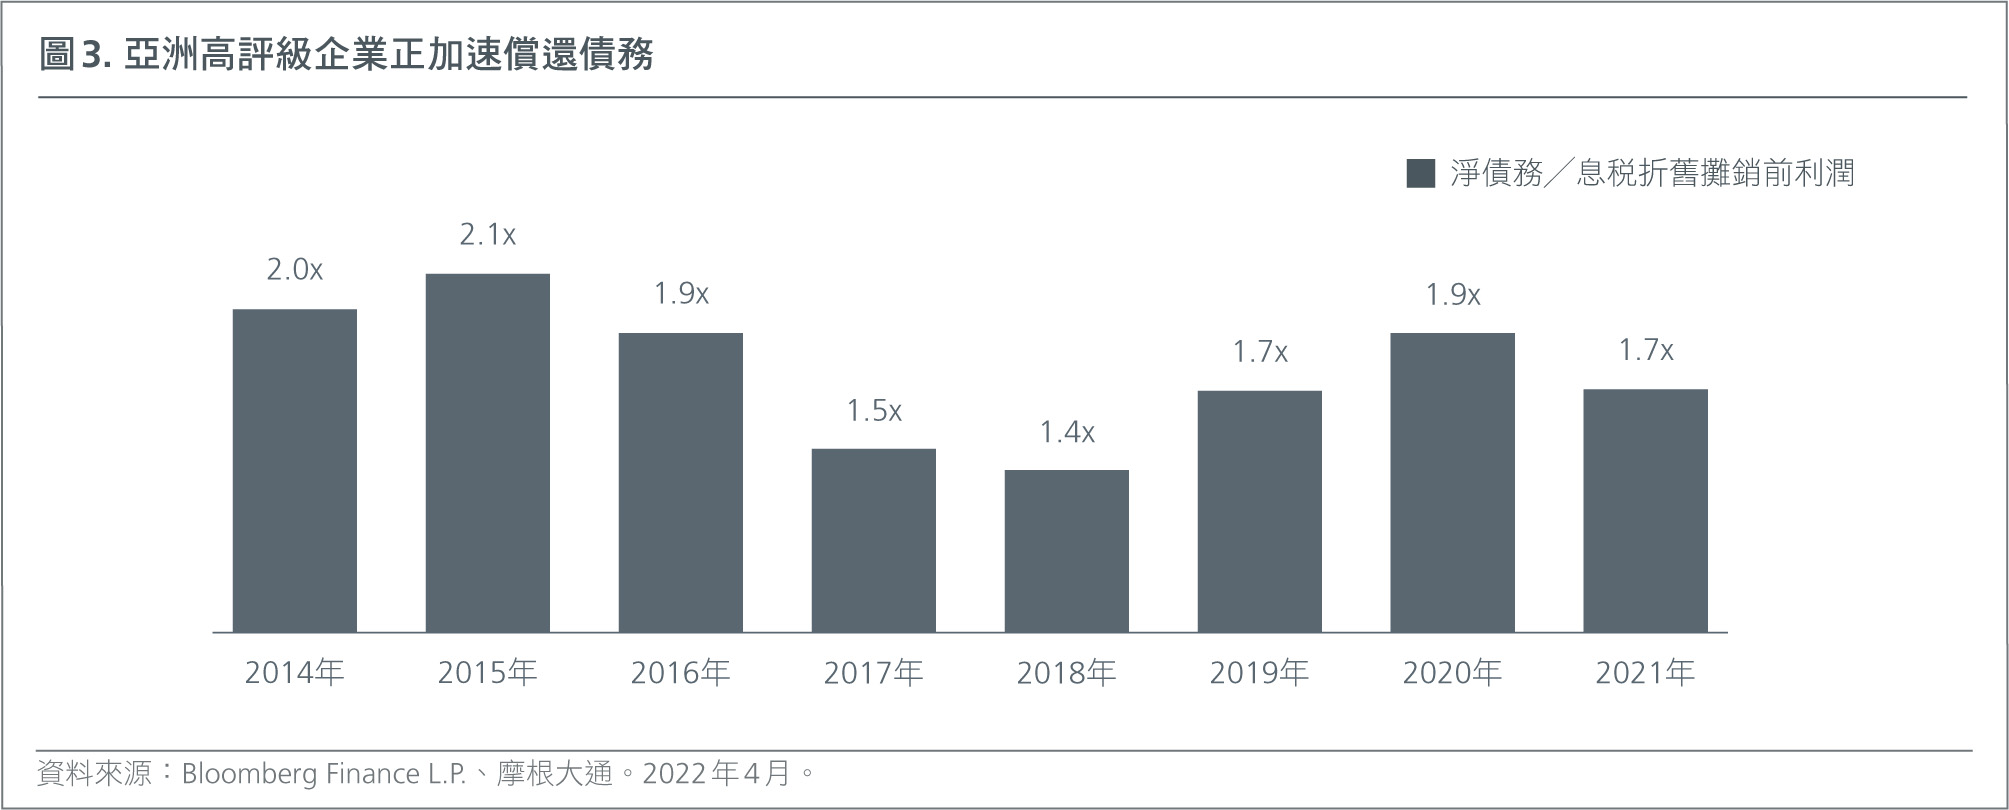 HK-CH-Bond investing in Asia-L-Fig3